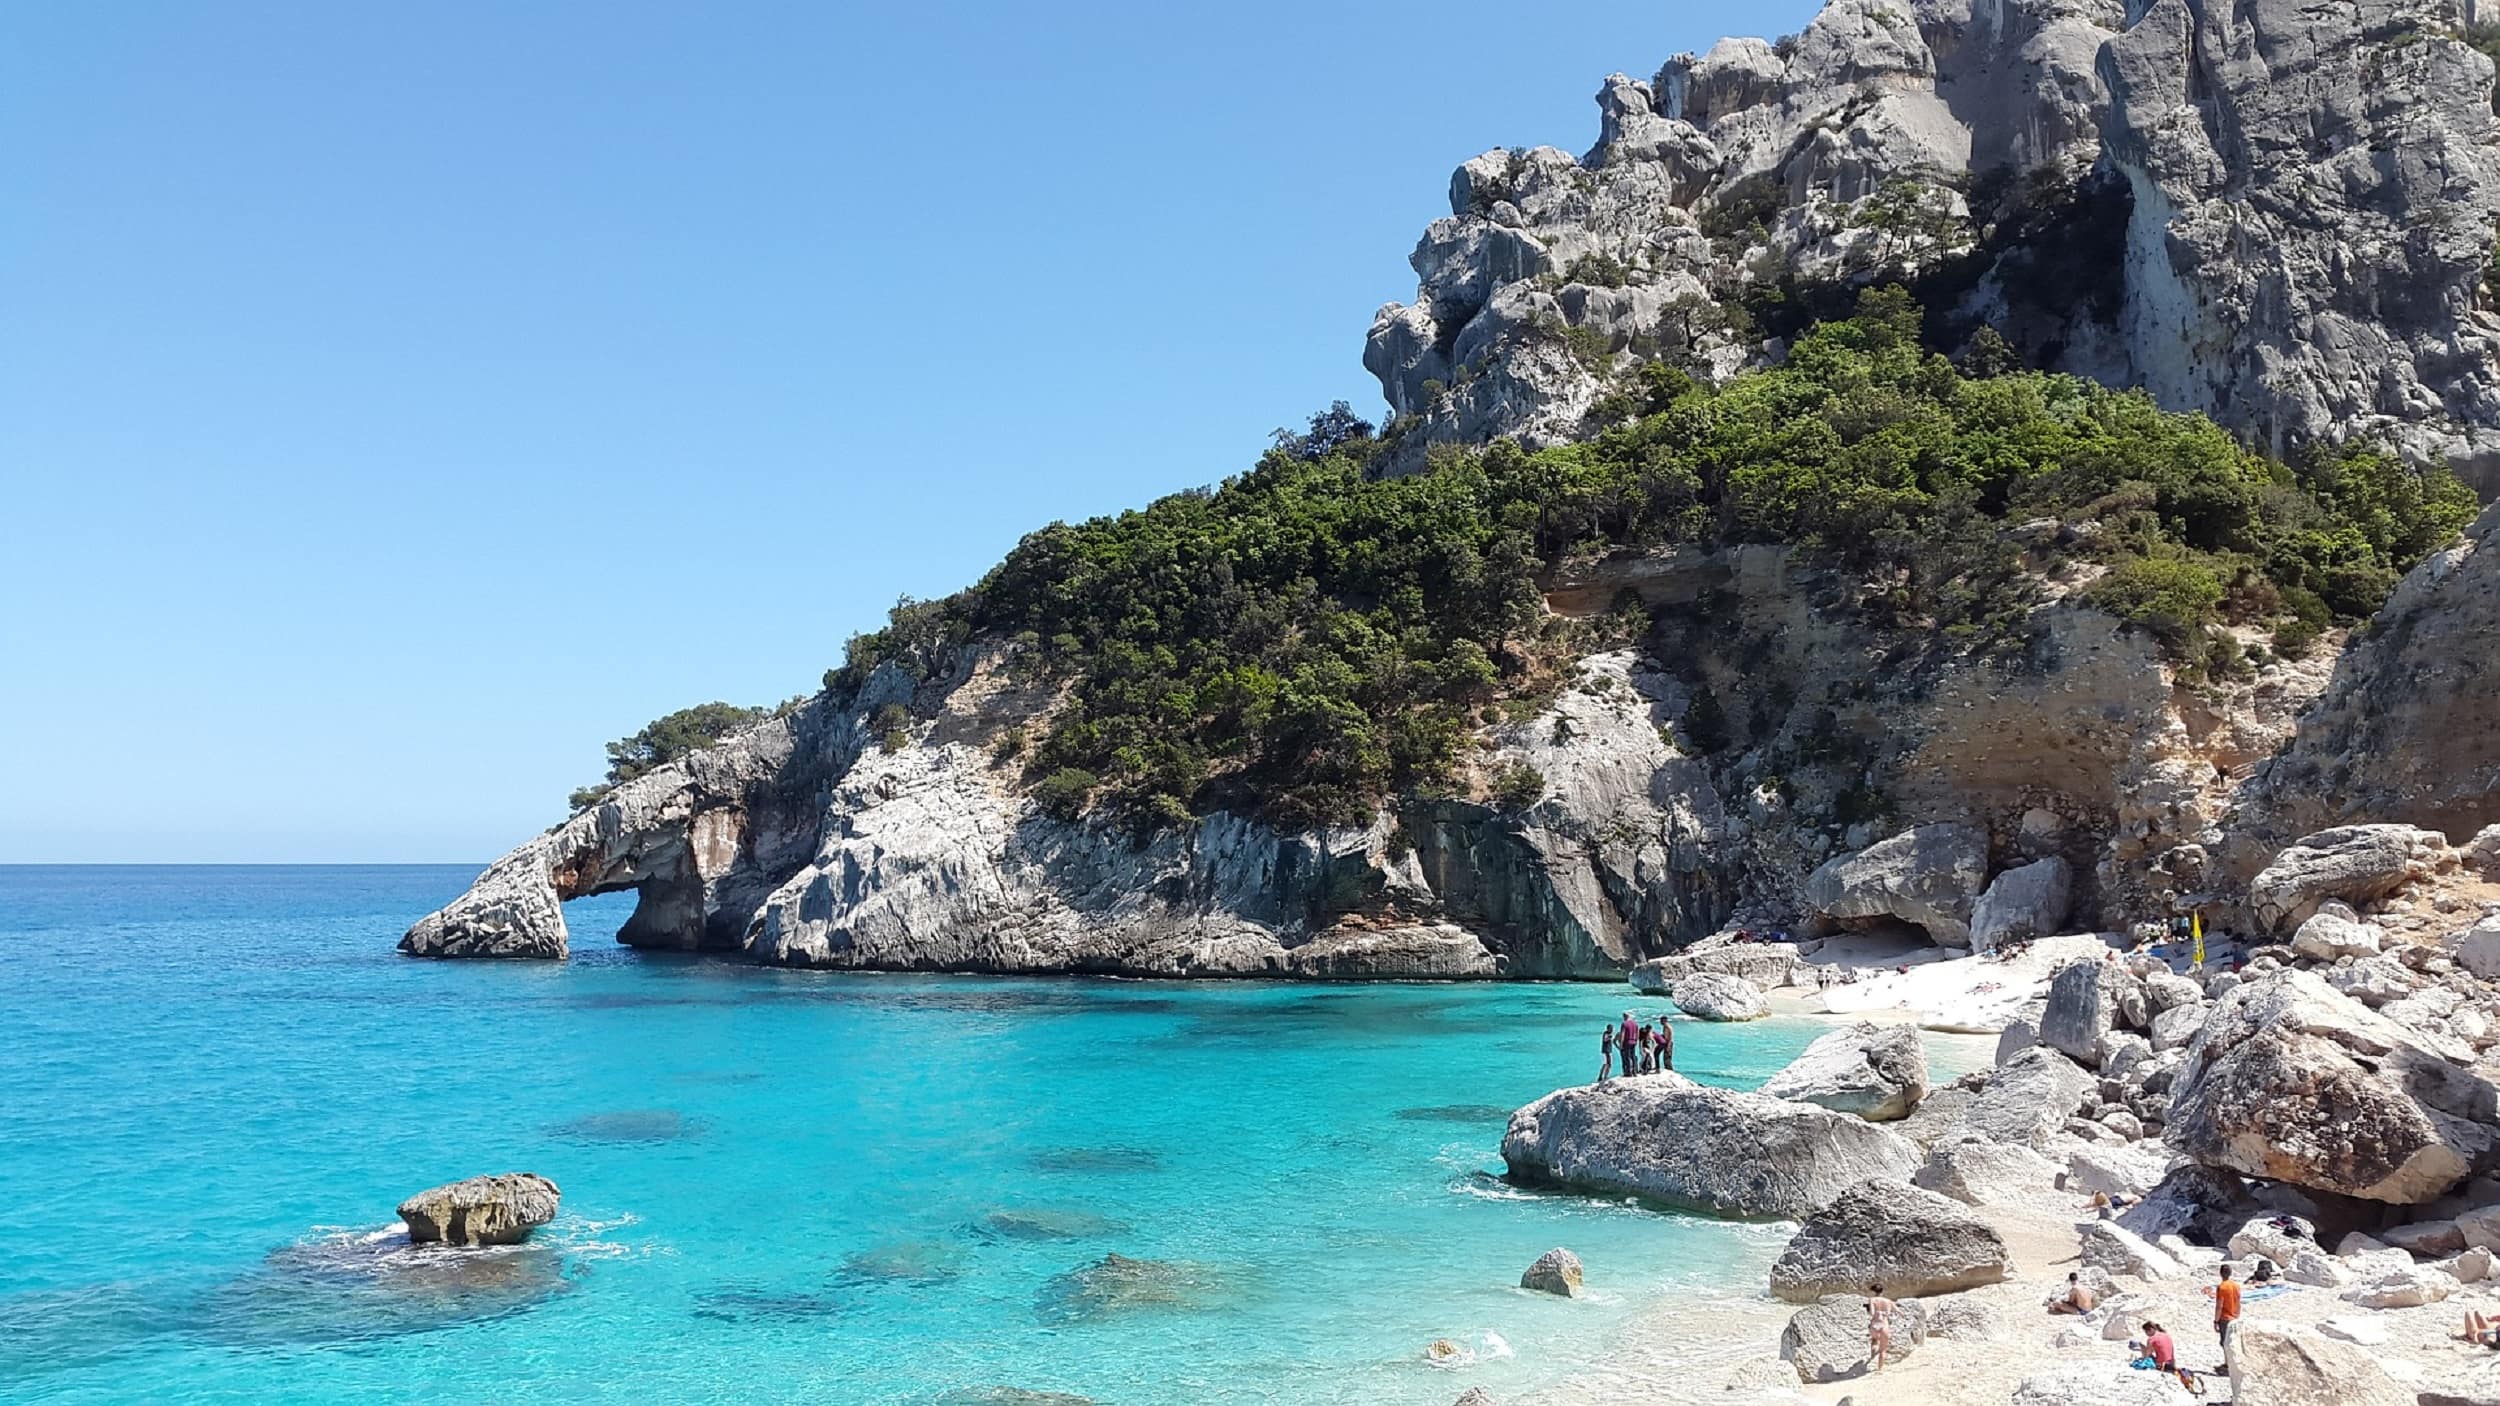 Ein Ferienhaus auf Sardinien am Meer – das Paradies auf Erden